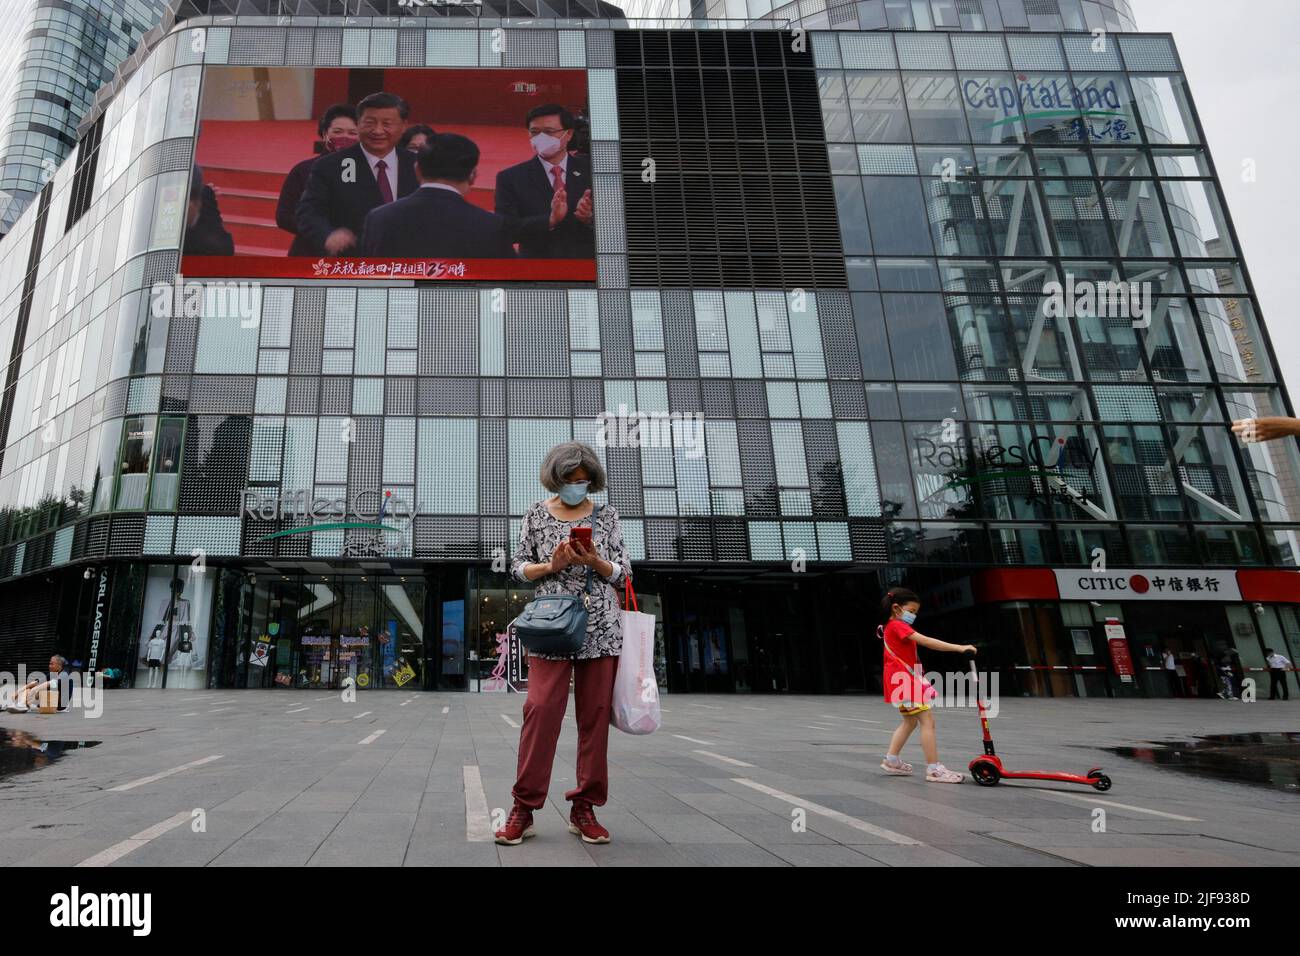 Ein Bildschirm zeigt Chinas Präsident Xi Jinping und Hongkongs neuen Chef John Lee während einer Zeremonie zur Einweihung der neuen Regierung Hongkongs in einem Einkaufszentrum in Peking, China, am 1. Juli 2022, am 25.. Jahrestag der Übergabe der Stadt von Großbritannien an China. REUTERS/Thomas Peter Stockfoto